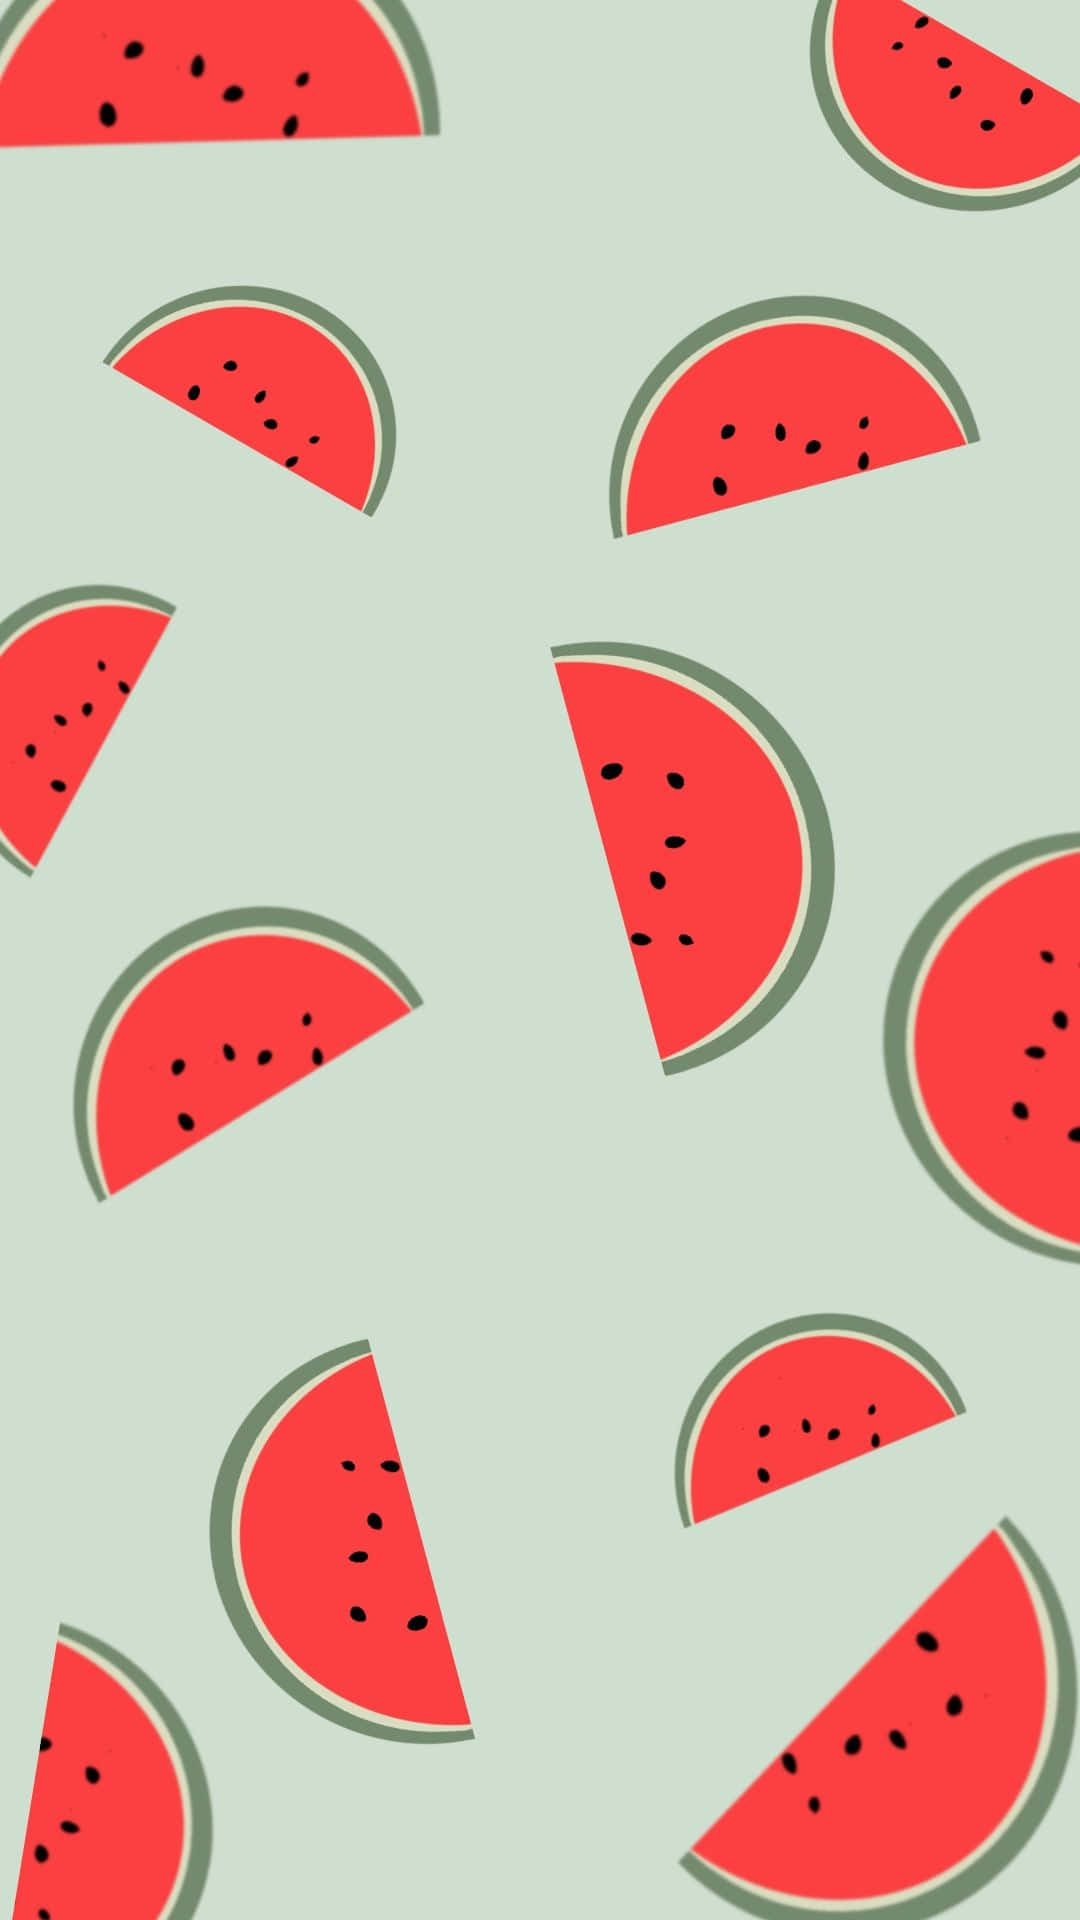 Erfrischendund Spaßig – Wassermelonen Hintergrundbild Für Das Iphone Wallpaper